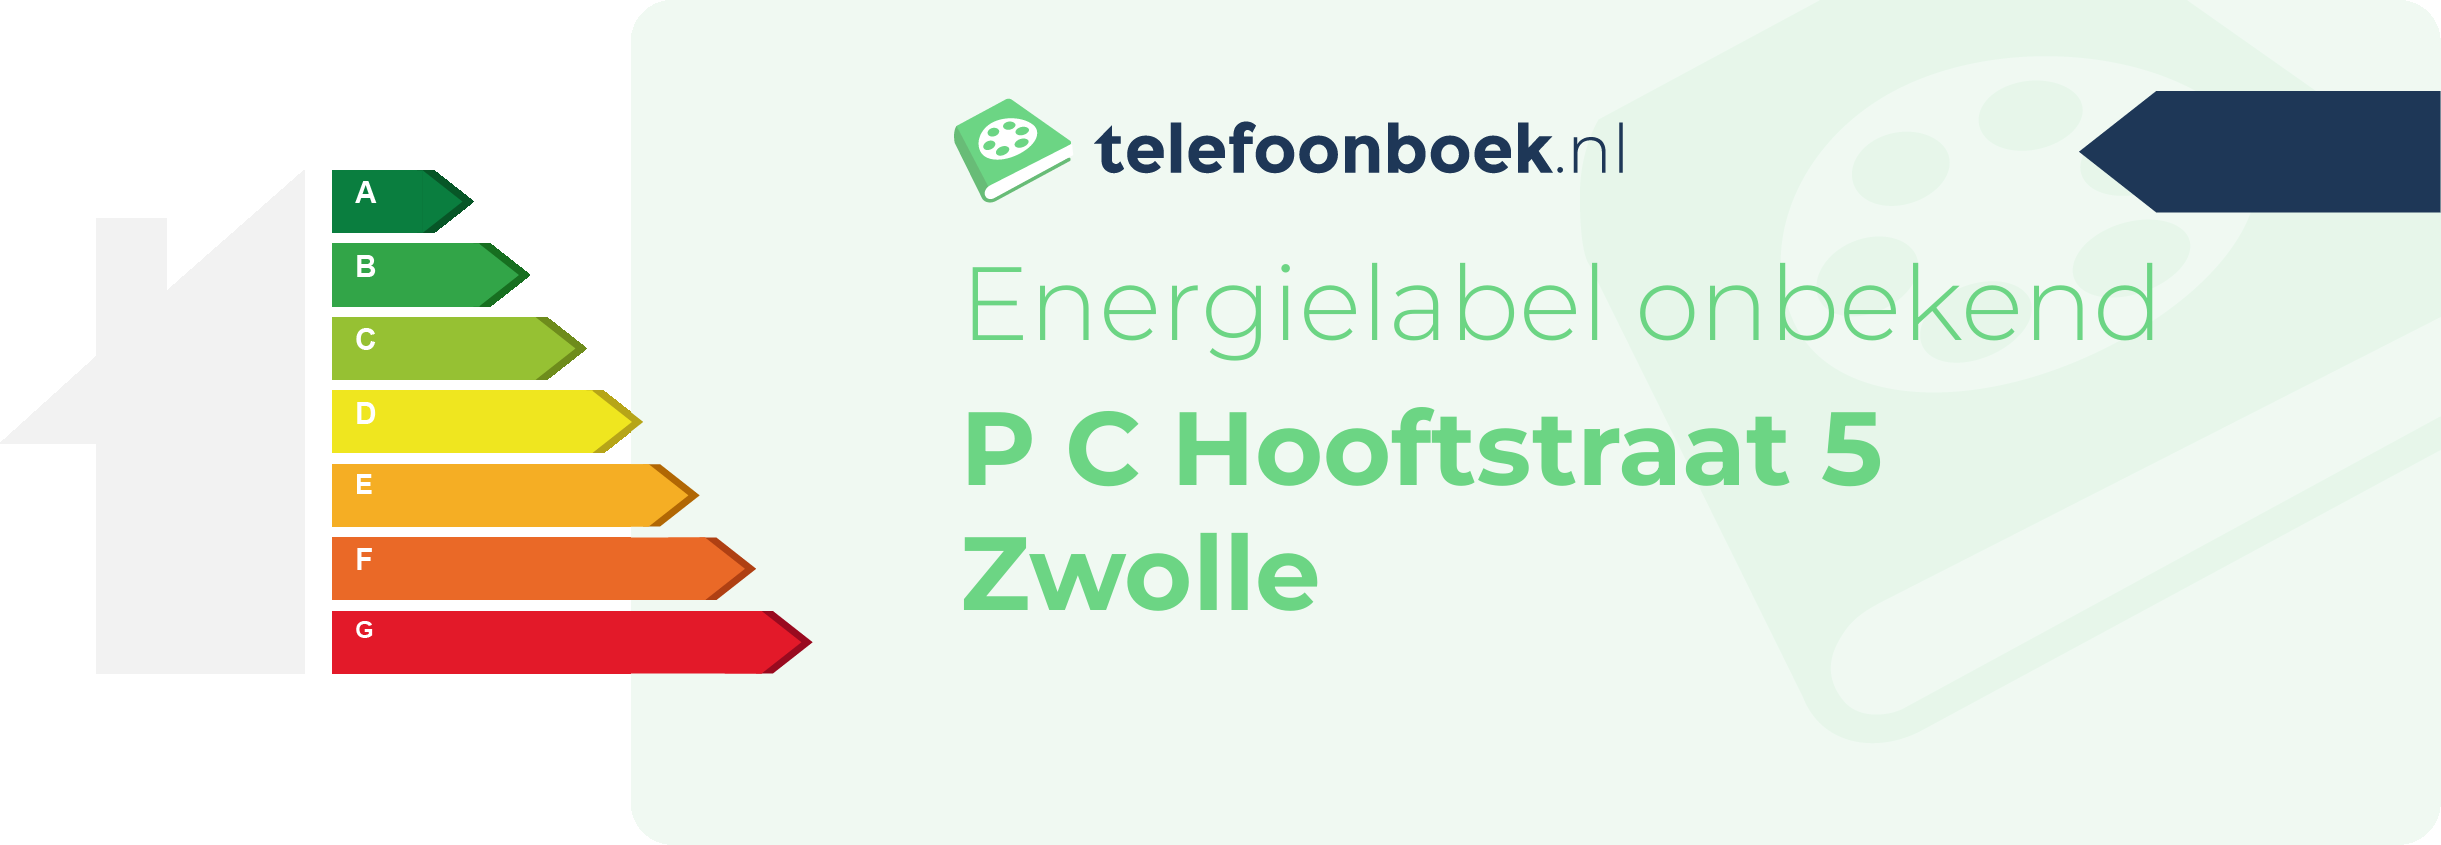 Energielabel P C Hooftstraat 5 Zwolle